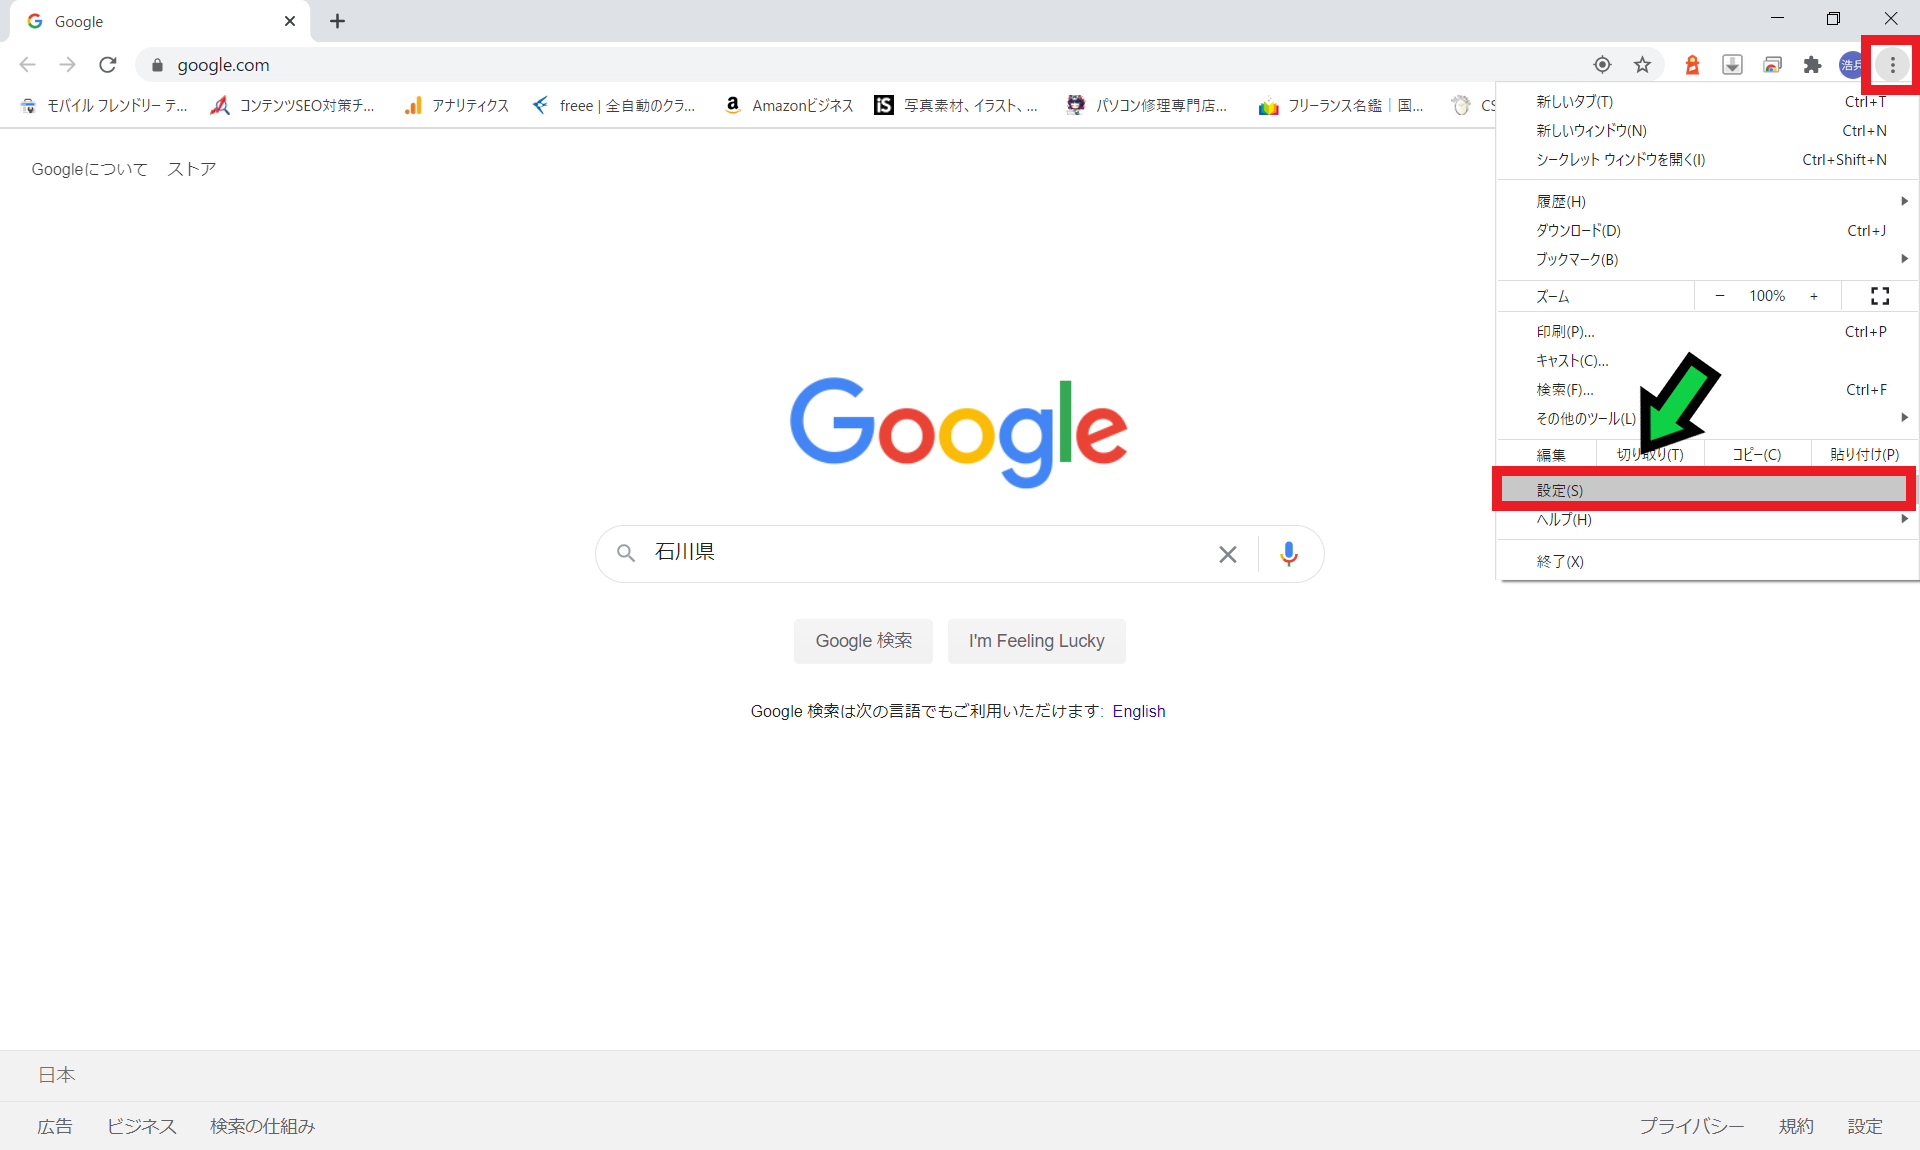 【完全版】Google Chrome検索で変換すると文字が二重になる障害の対応方法